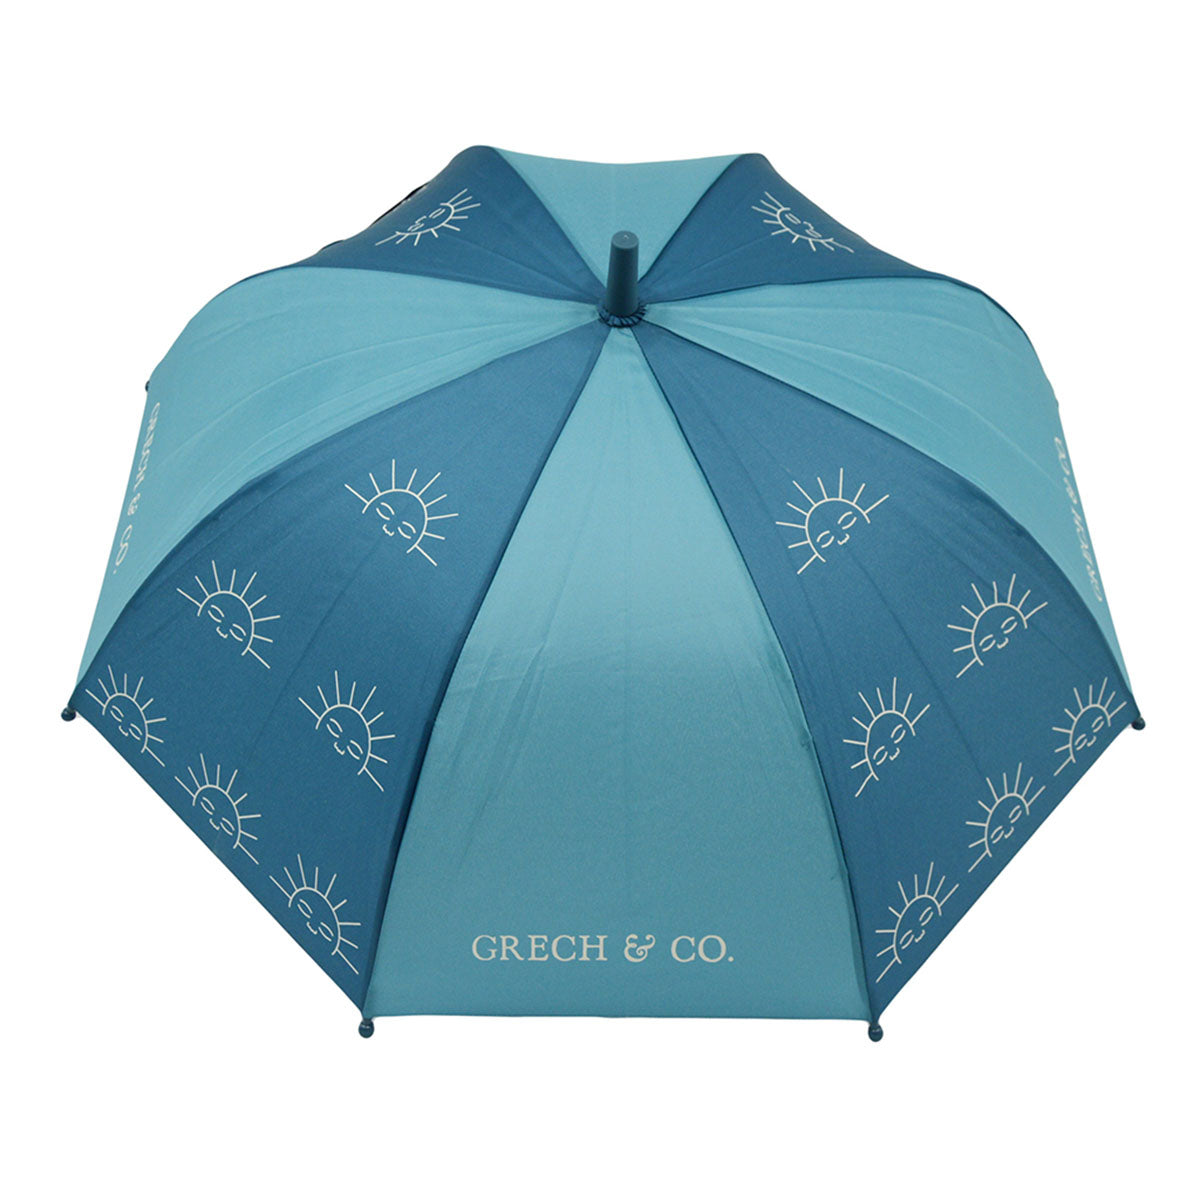 Bij regen én zonneschijn zorgt de duurzame Grech & co. paraplu kids laguna ervoor dat je stijlvol voor de dag komt. Leuk voor kinderen die willen matchen met hun grote broer/zus, mama of papa. VanZus